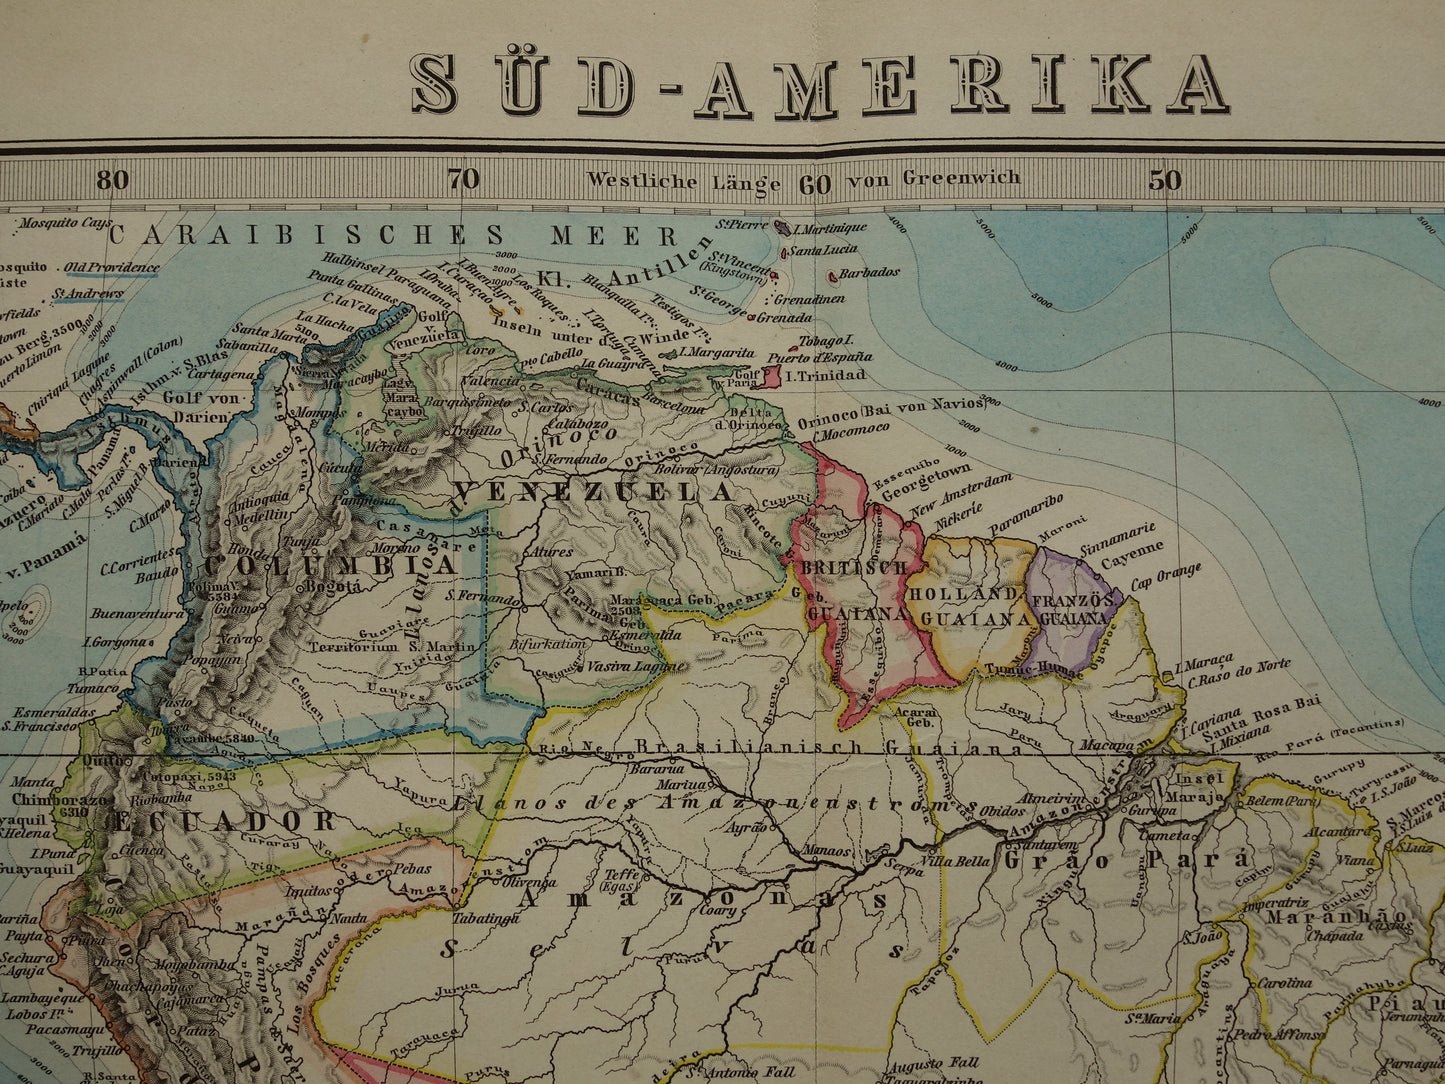 ZUID-AMERIKA vintage landkaart uit 1885 van continent Originele oude antieke kaart met jaartal - historische kaarten van Zuid-Amerika